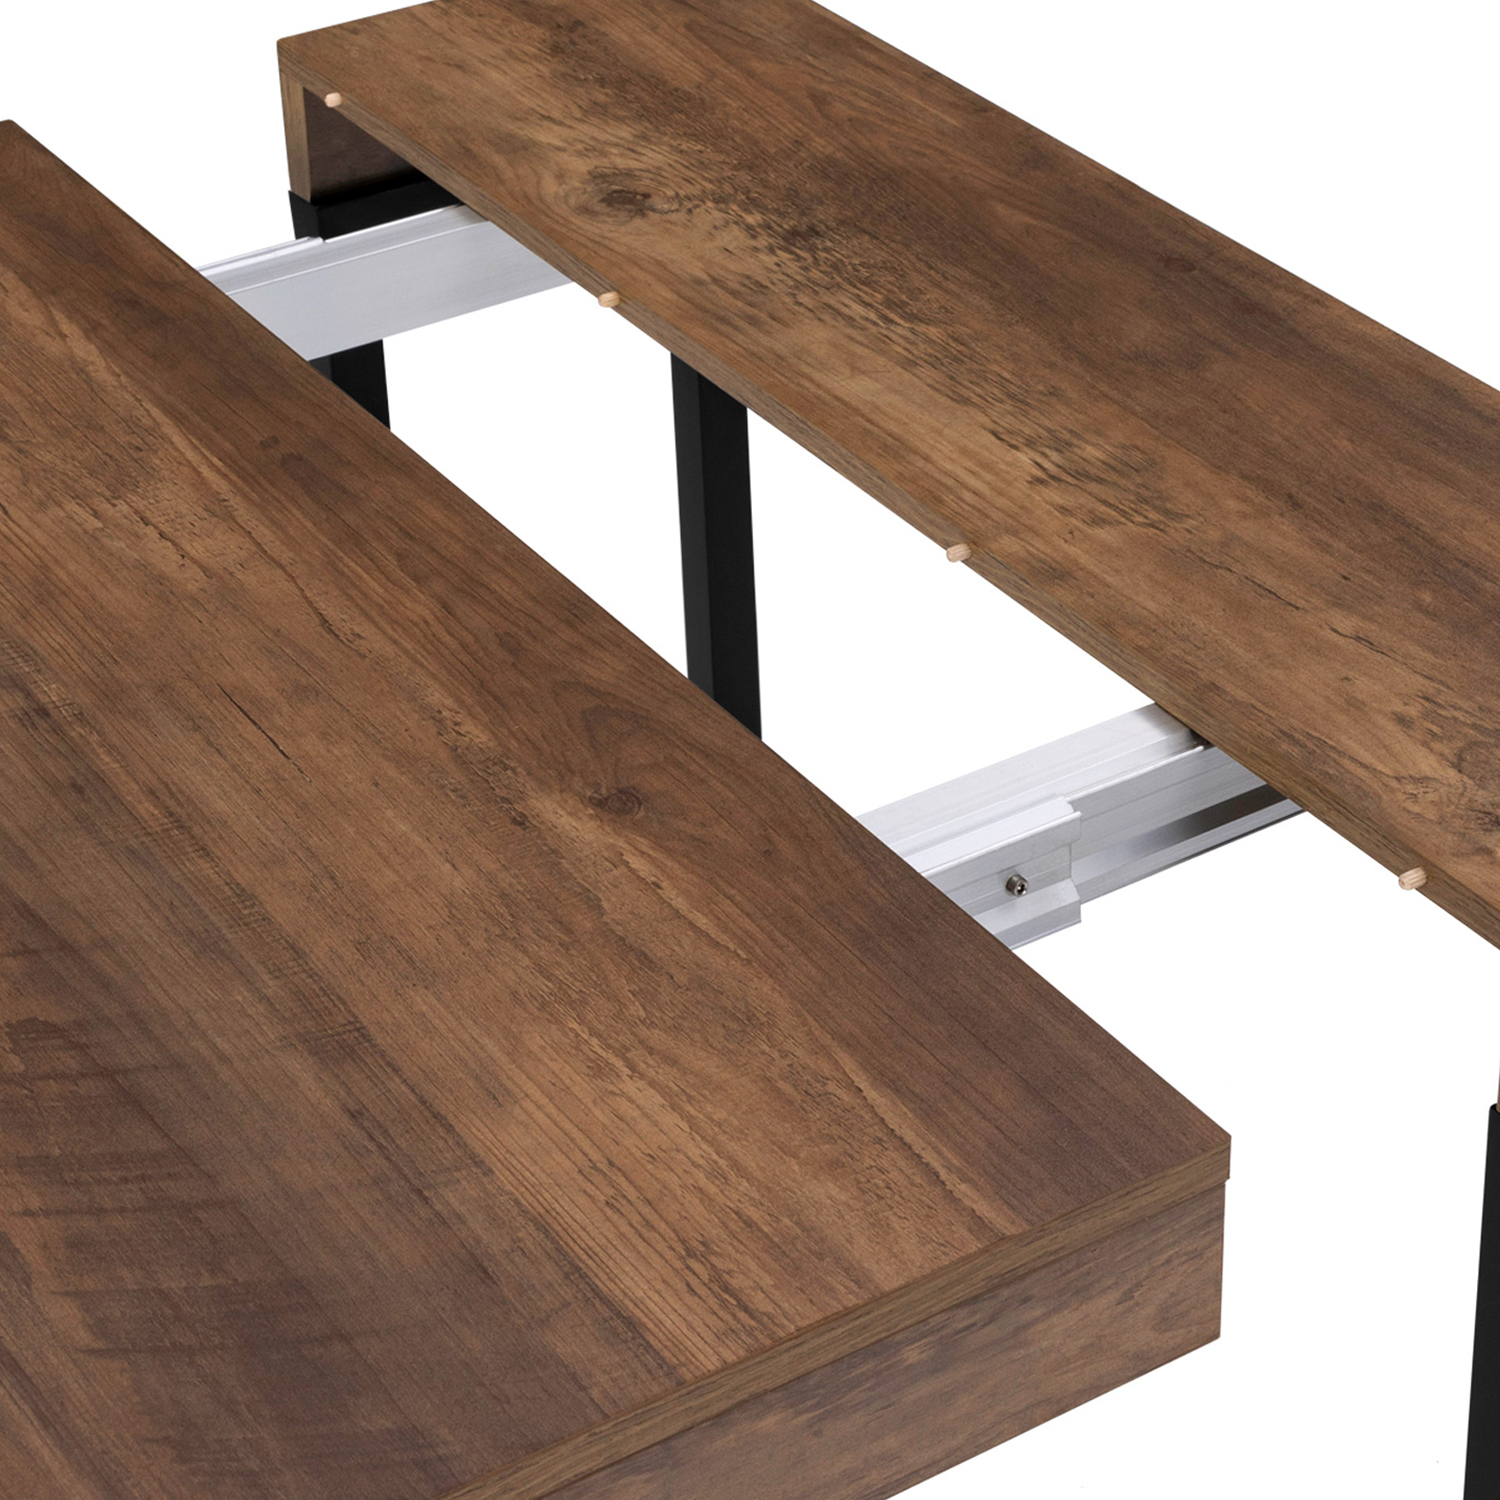 IDMarket - Table Console Extensible Toronto 14 Personnes 300 cm Design  Industriel